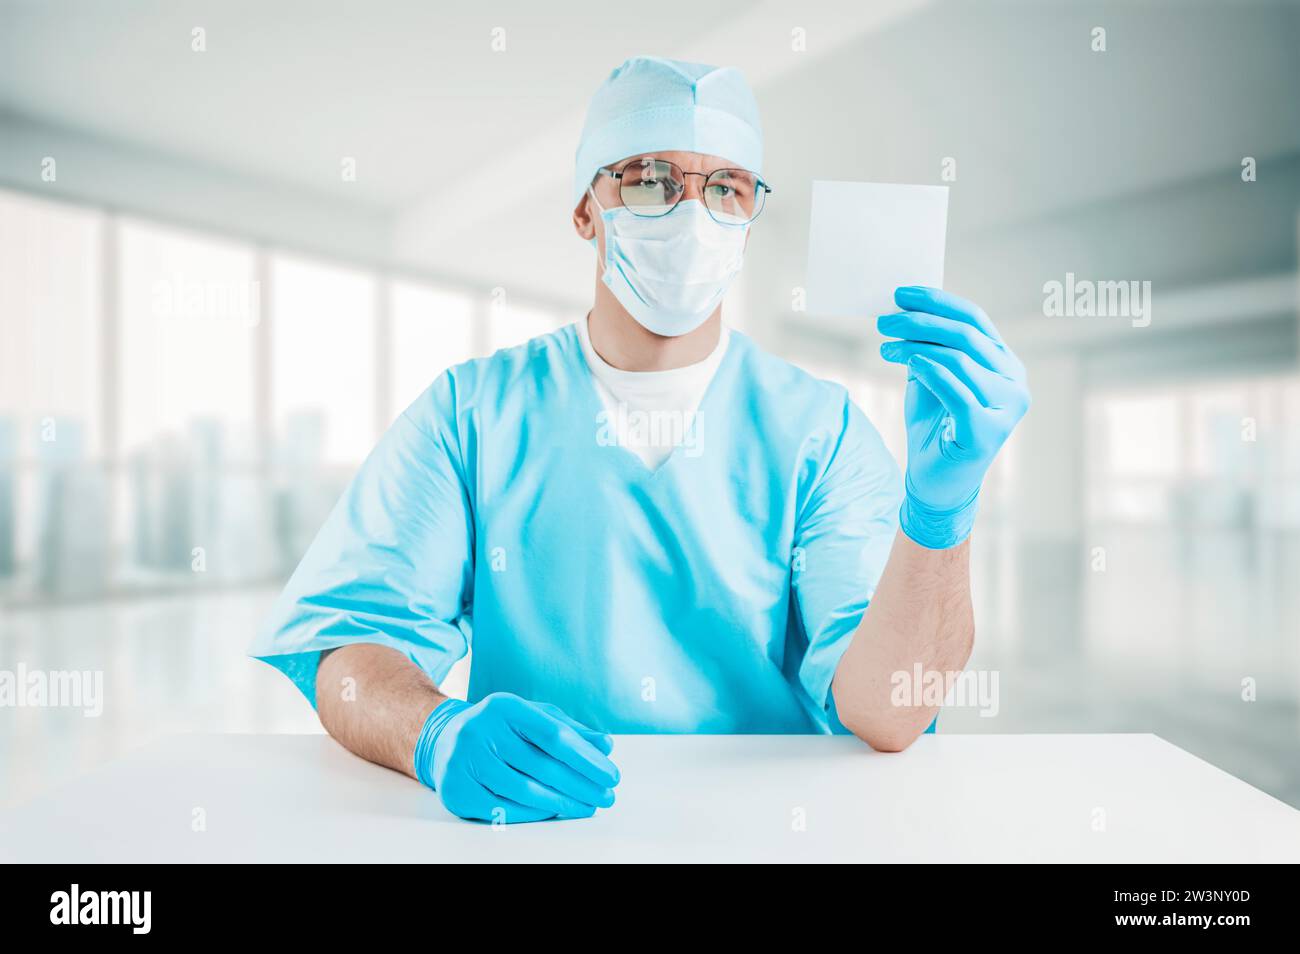 Portrait d'un médecin tenant une feuille de papier blanche dans sa main. Concept médical. Supports mixtes Banque D'Images